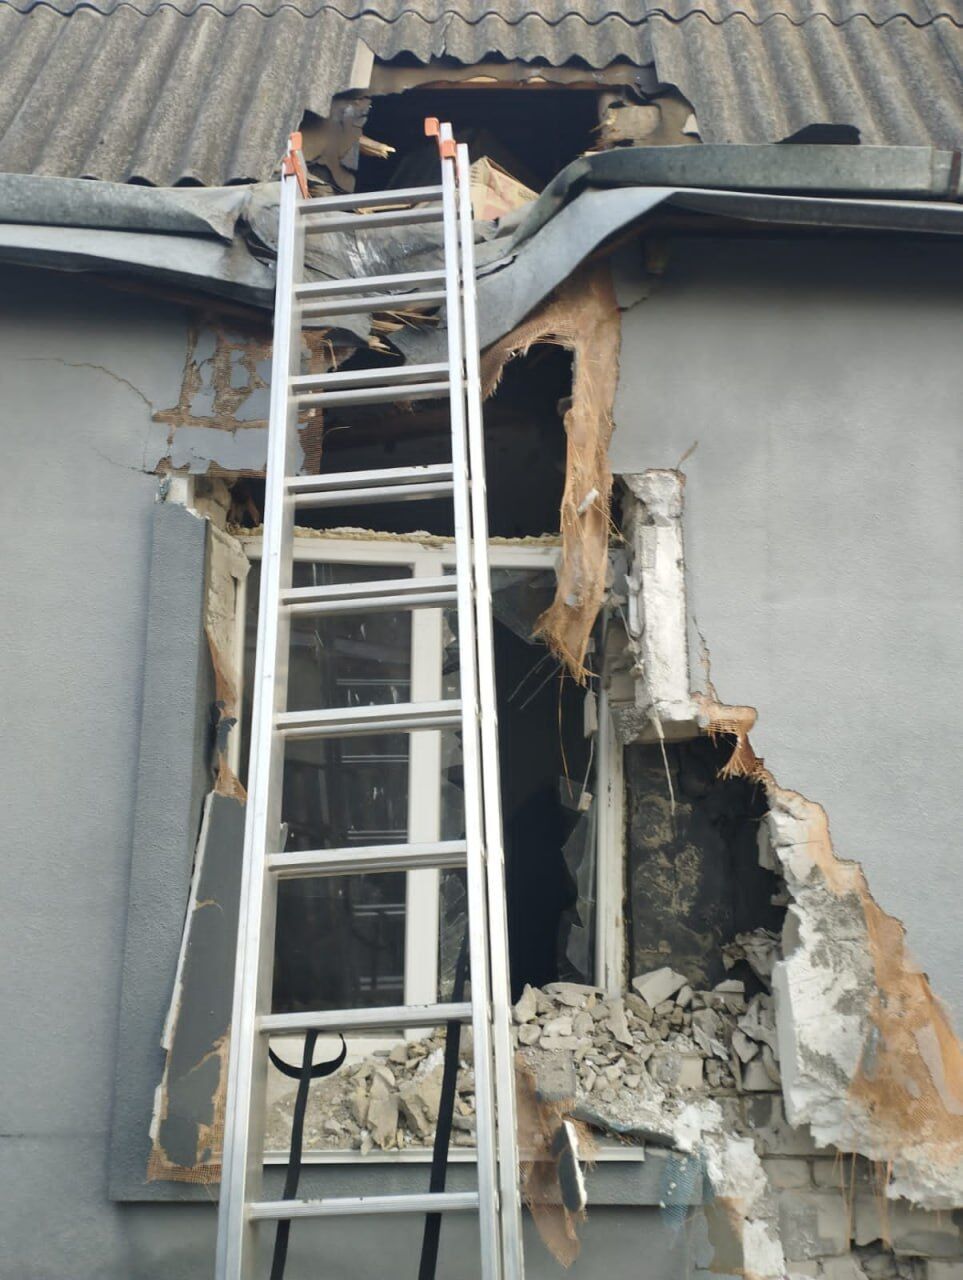 В Киевской области обломки вражеских ракет упали на частные дома, вспыхнули пожары: есть пострадавший. Фото последствий